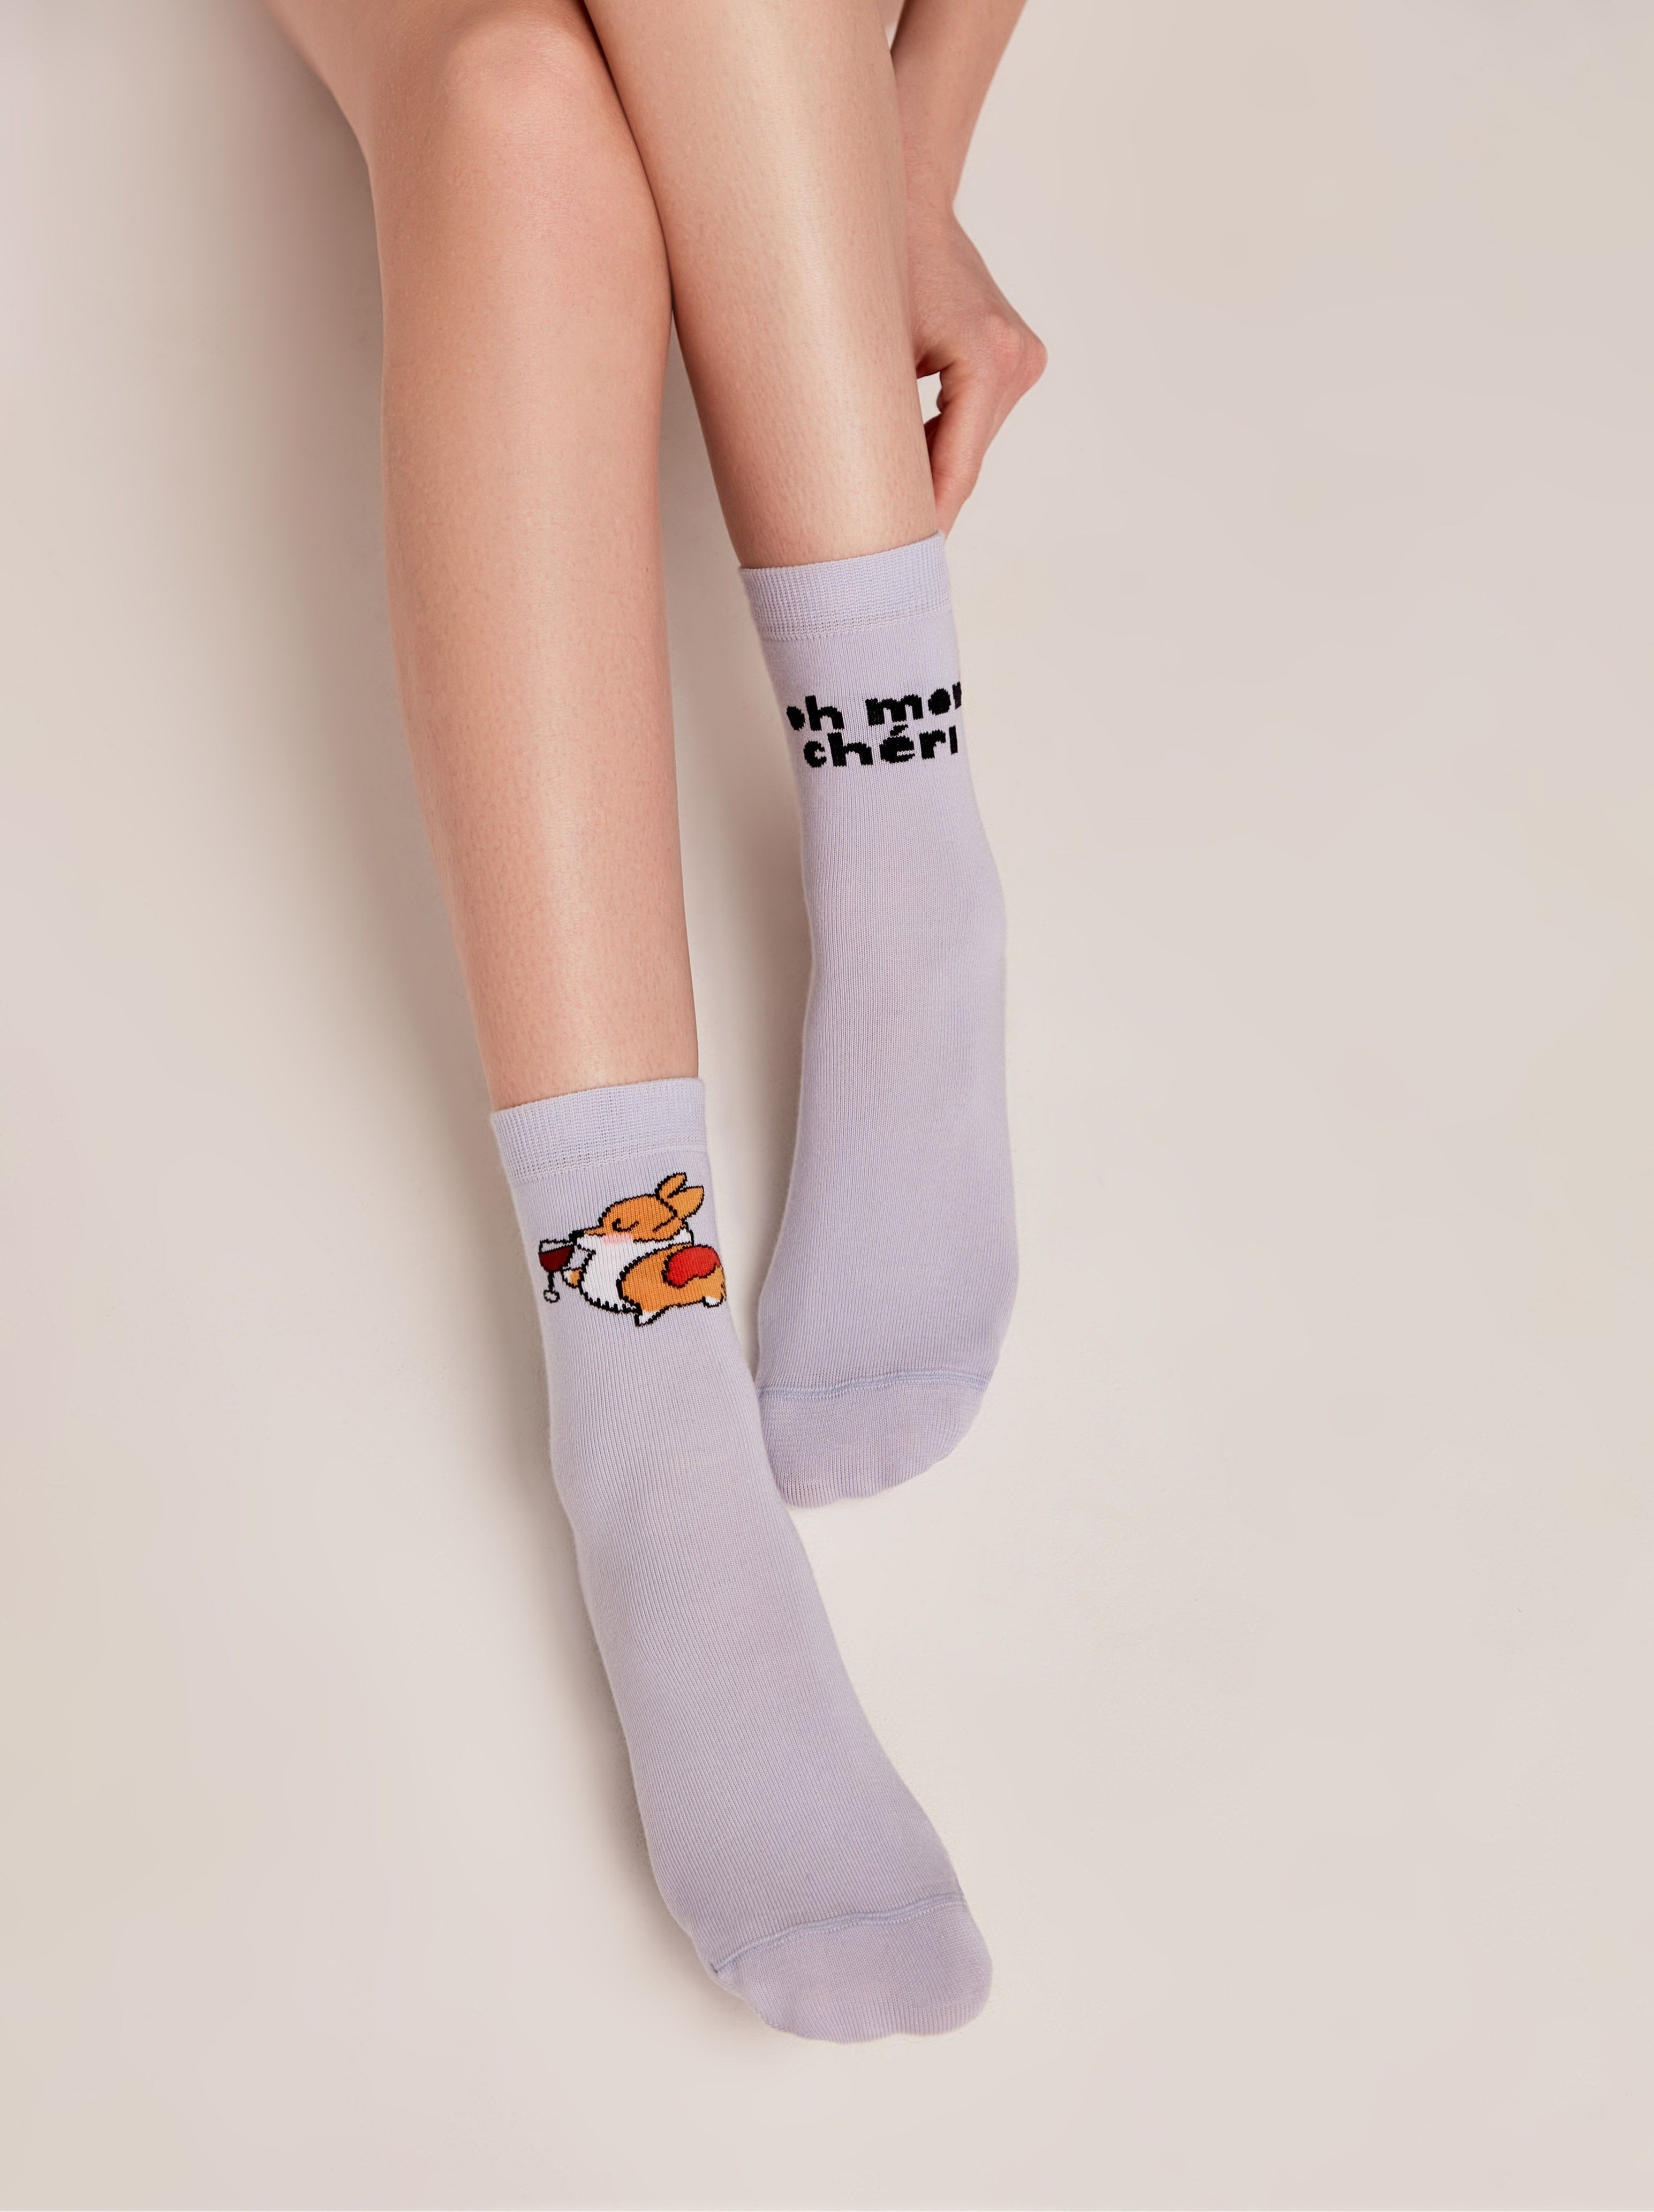 Хлопковые носки с рисунками "Oh mon chéri" Conte бледно-фиолетовый  